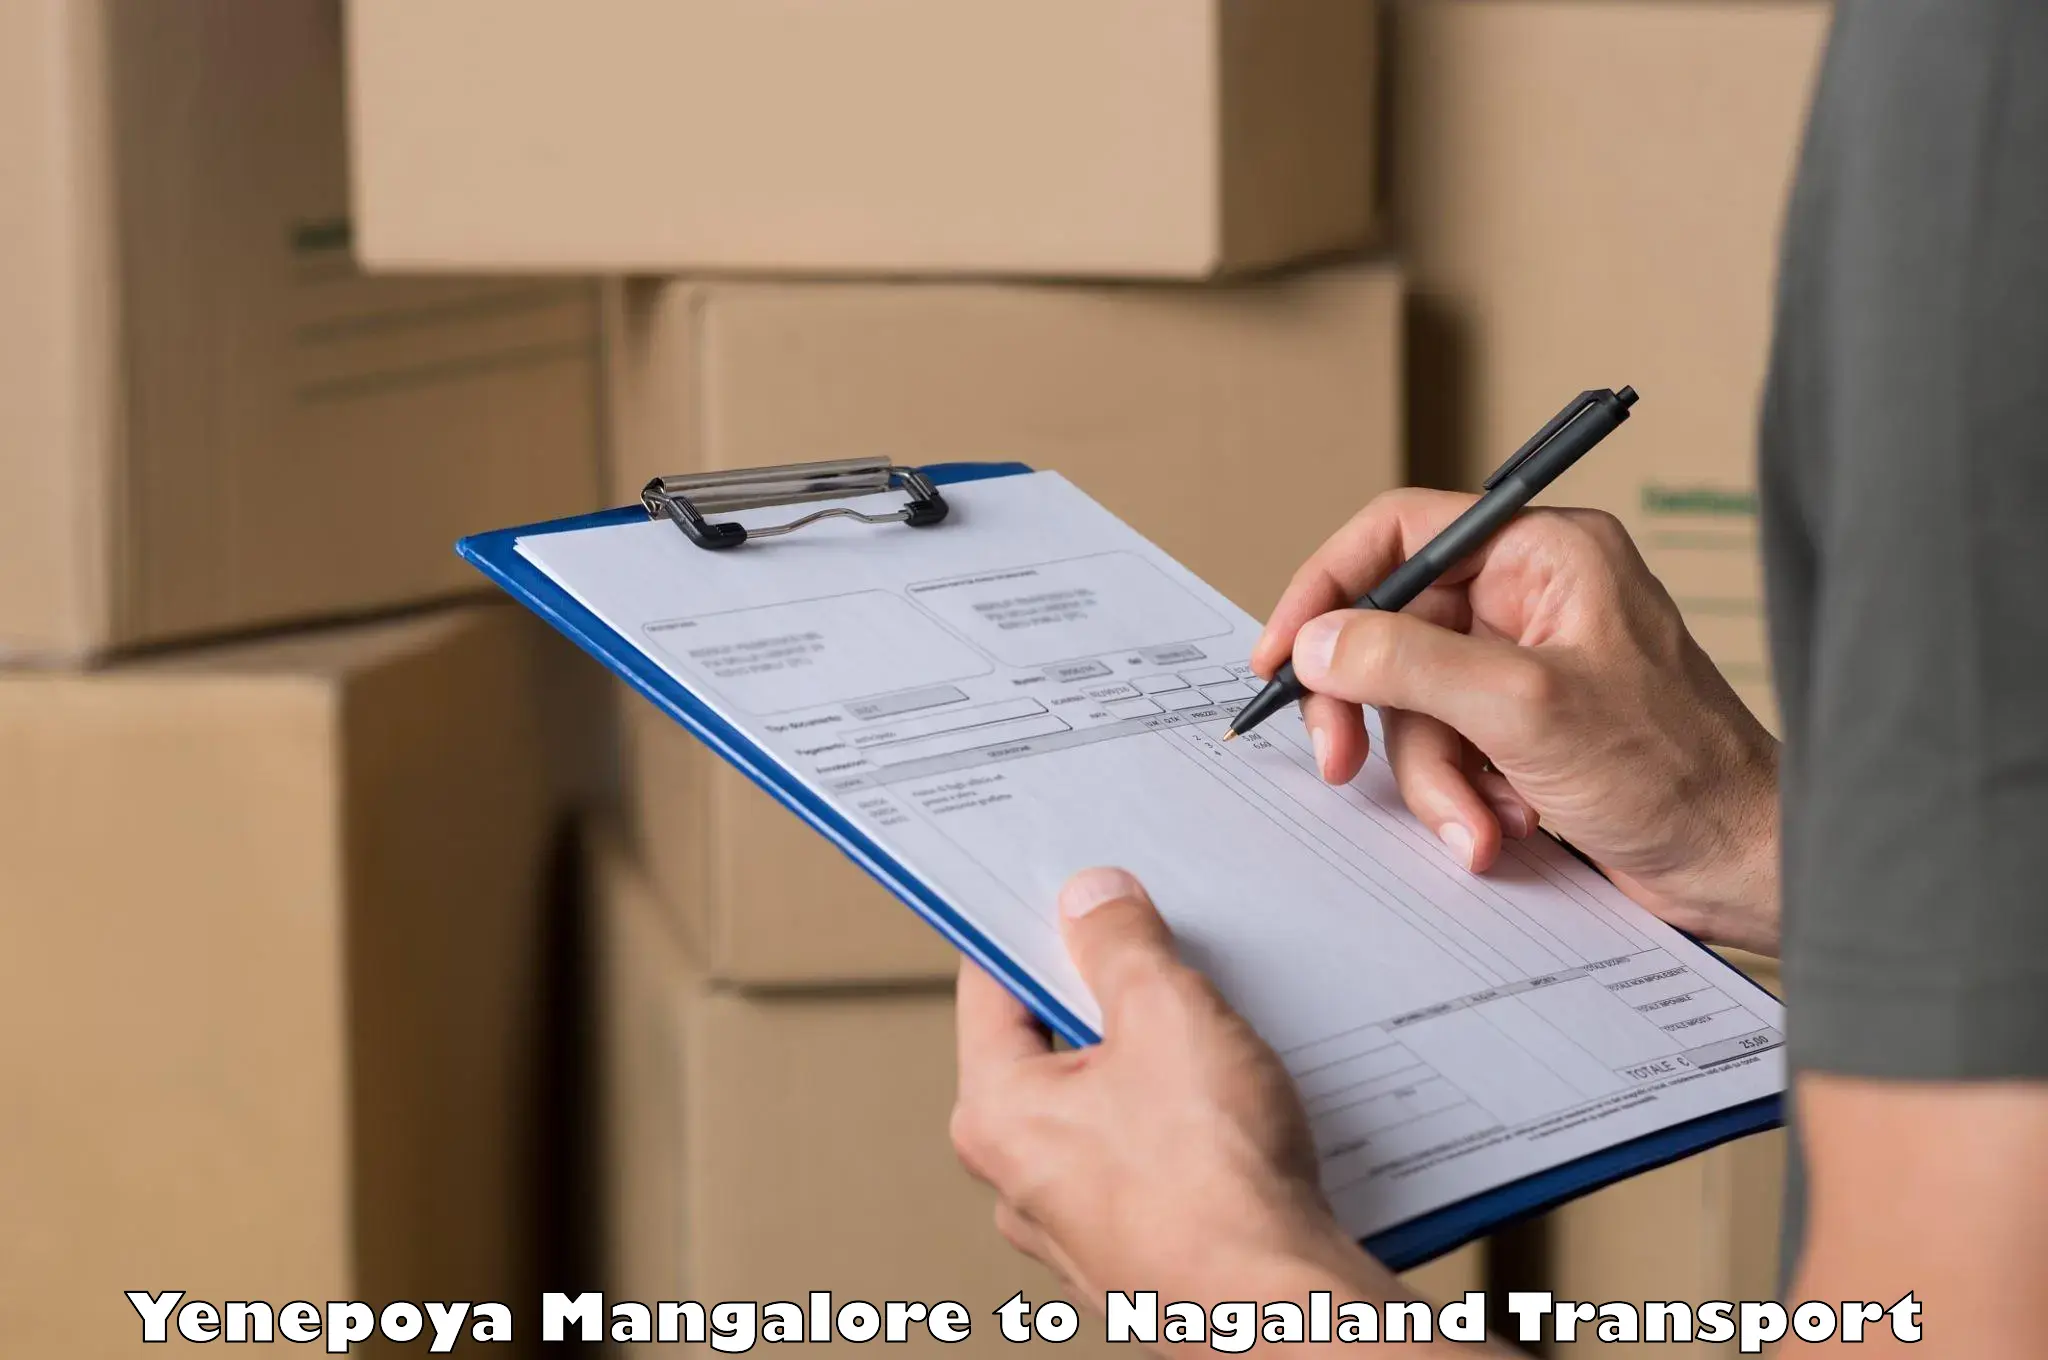 Shipping partner Yenepoya Mangalore to Nagaland